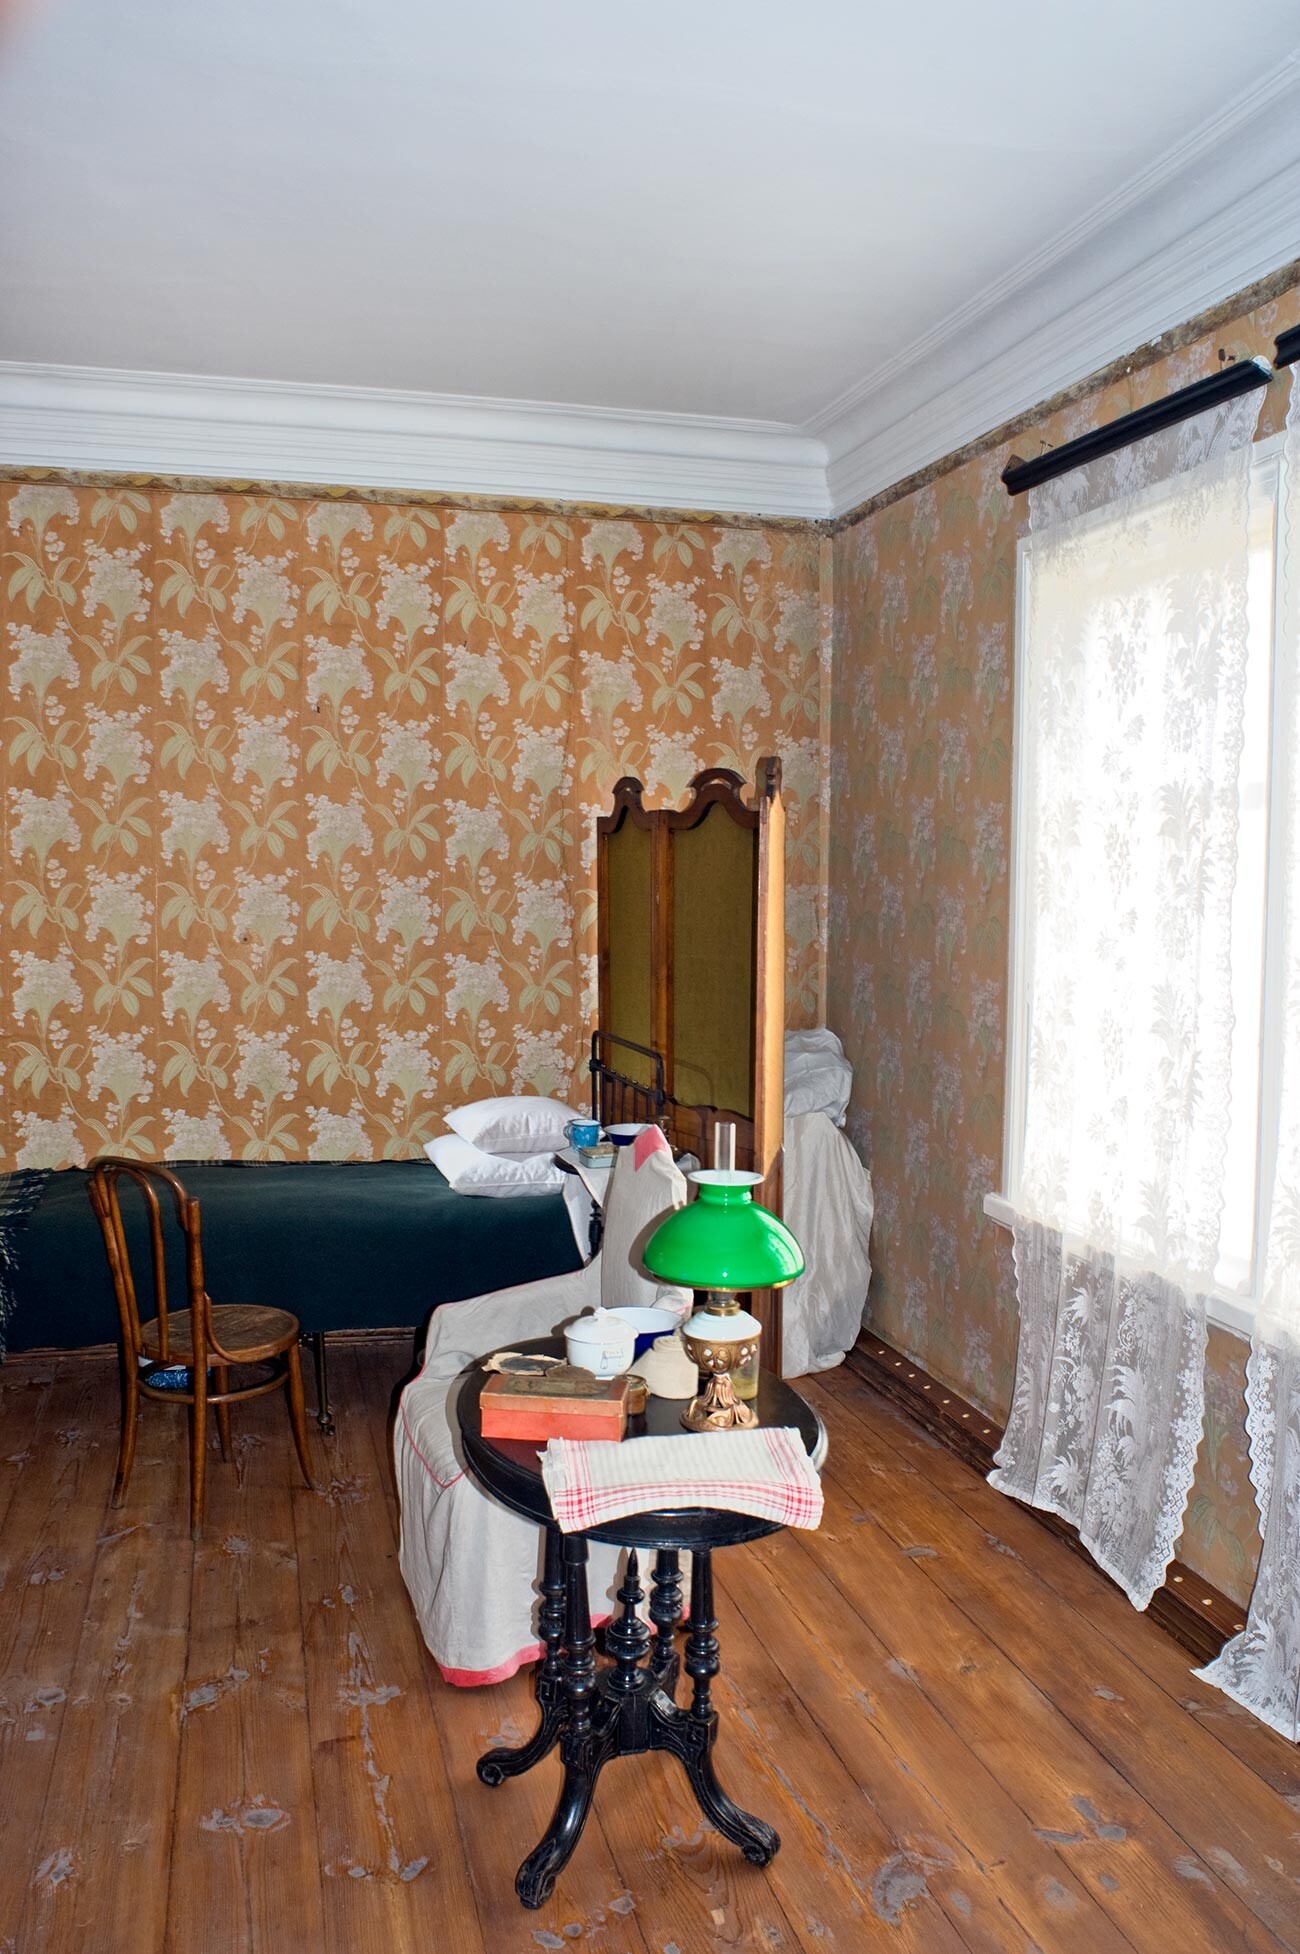 Casa del jefe de estación, interior. Vista desde la entrada principal de la habitación donde yacía Tolstói. A la derecha: ventana por la que miraba su esposa Sofía desde el exterior. 10 de agosto de 2013. 